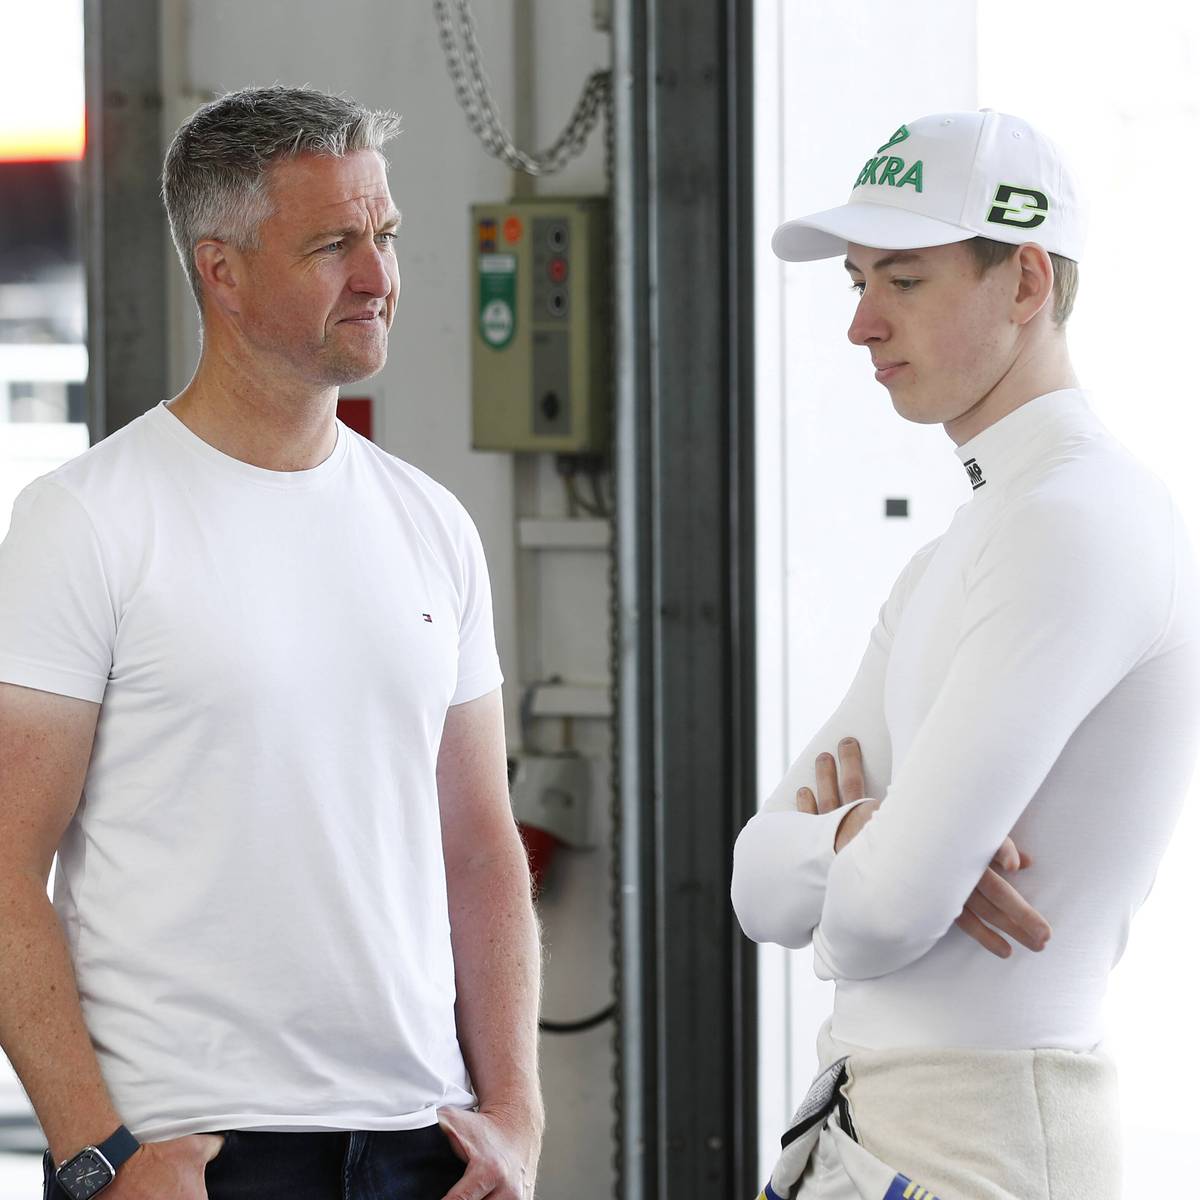 Im AvD Motor & Sport Magazin spricht David Schumacher über seine mögliche Zukunft in der Formel 1. Außerdem erklärt er, was ihn an seinem Vater Ralf am meisten nervt.